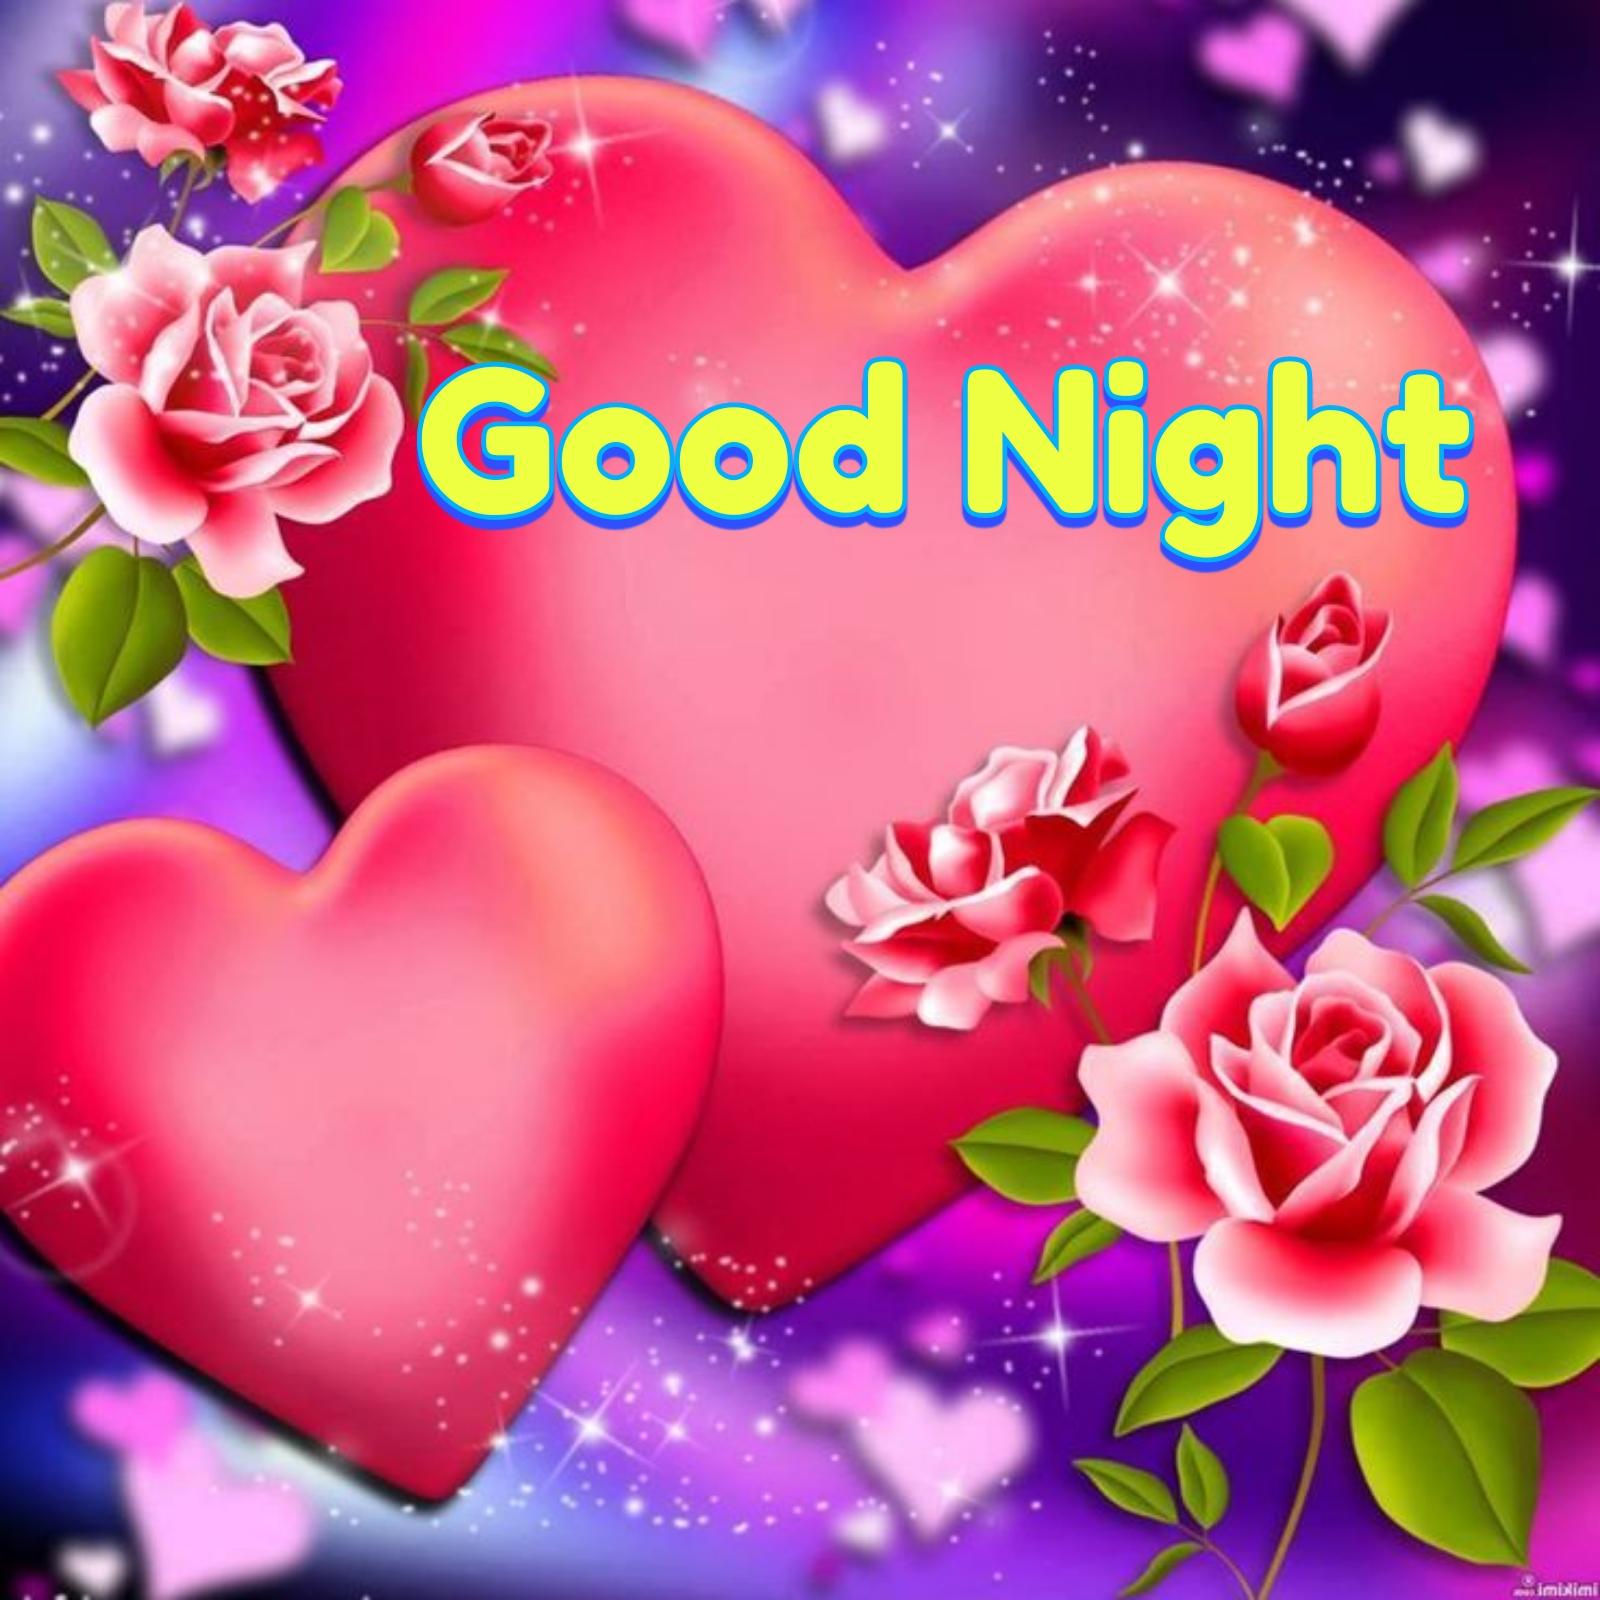 Good Night Flowers For Lovers - Flower Good Night Images - Good Night HD  Wallpaper | Good night flowers, Good night image, Good night sweet dreams